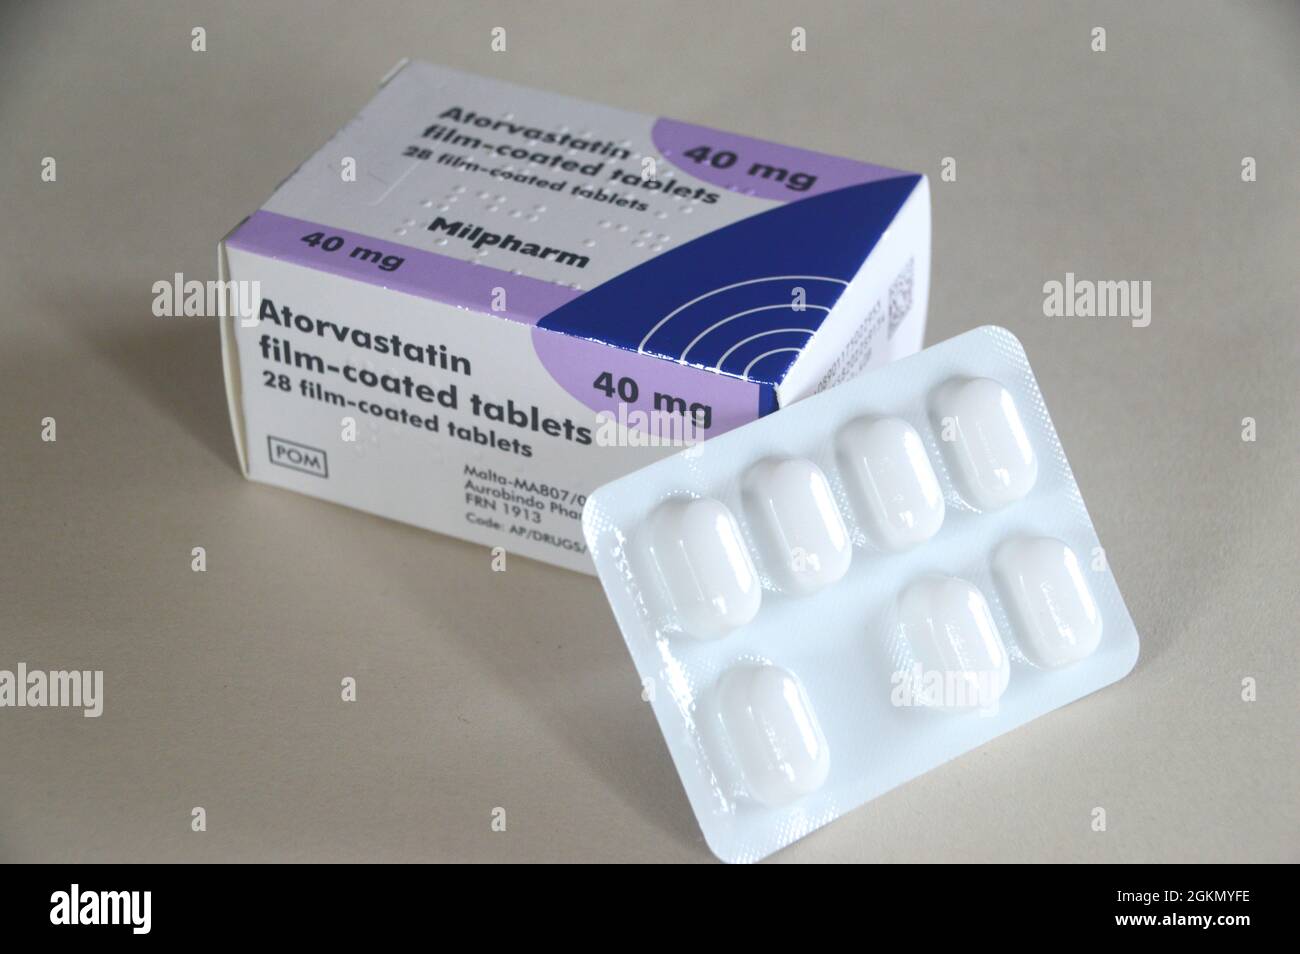 Une boîte de 28 comprimés pelliculés d'Atorvastatine (Lipitor) 'Statin' fabriqués par Milpharm et prescrits pour réduire le cholestérol, Angleterre, Royaume-Uni. Banque D'Images